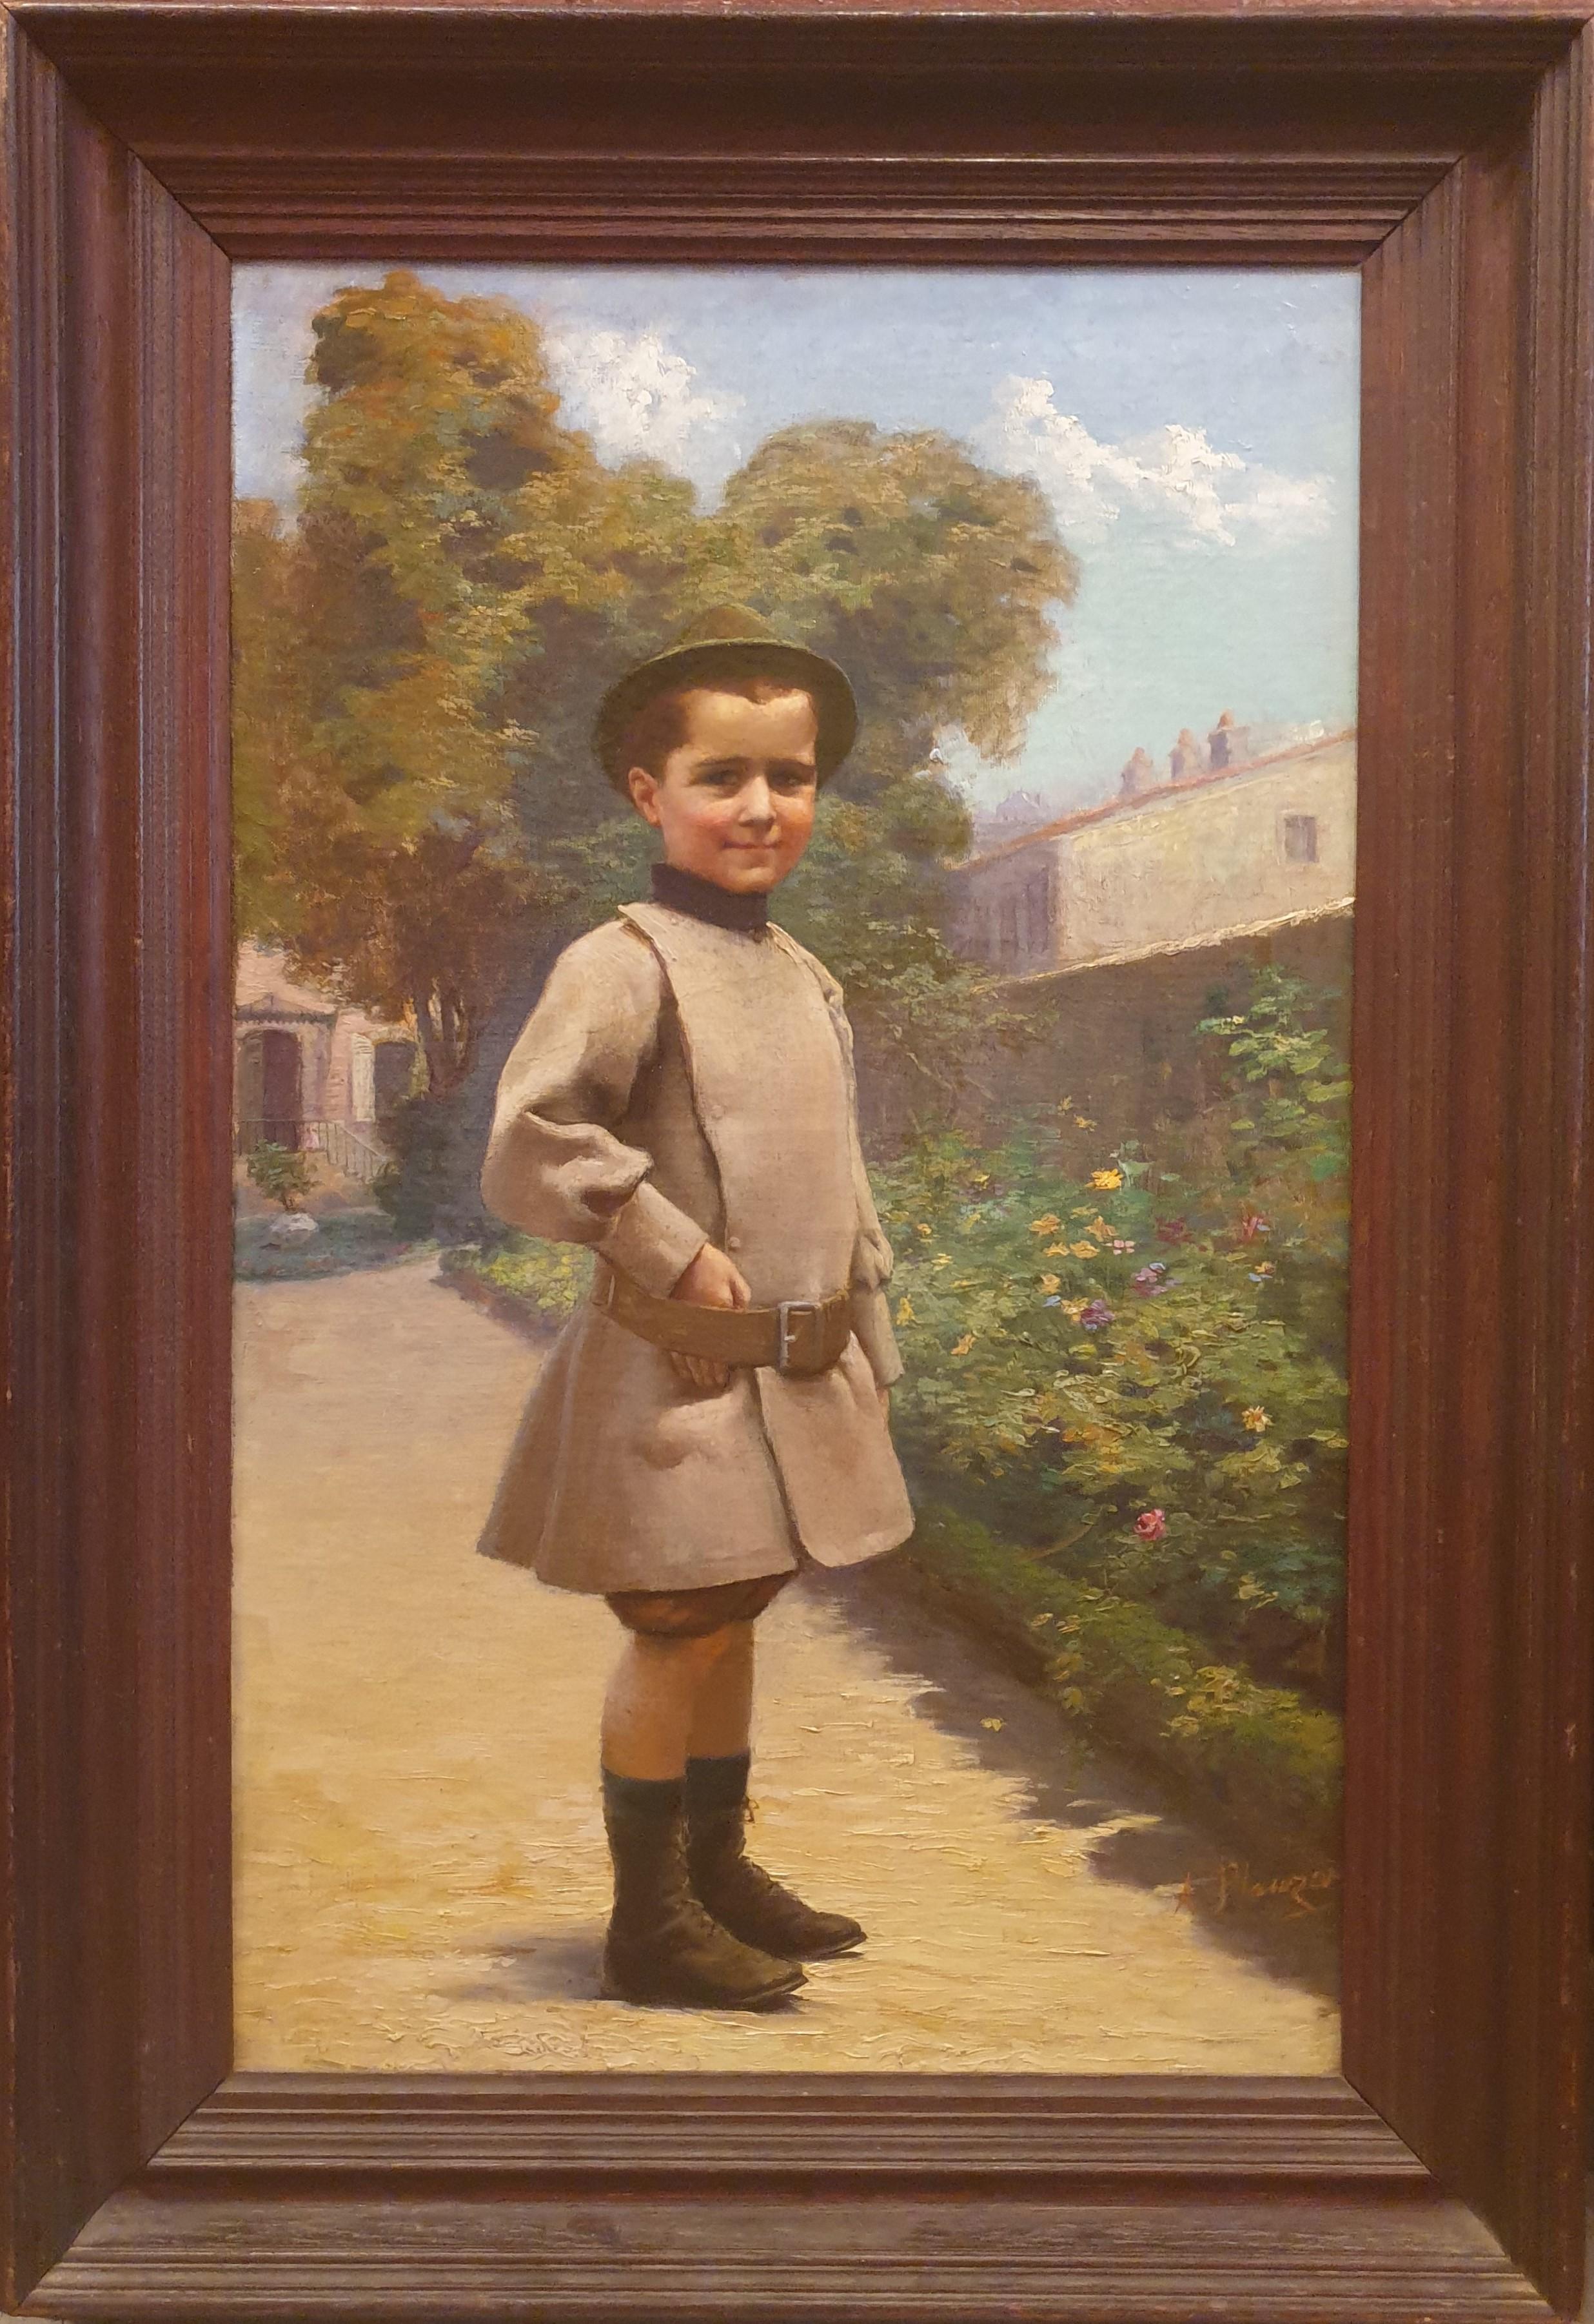 PLAUZEAU, Gemälde, Öl, Leinwand, Französisches akademisches Porträt eines Jungen, frühes 20. Jahrhundert